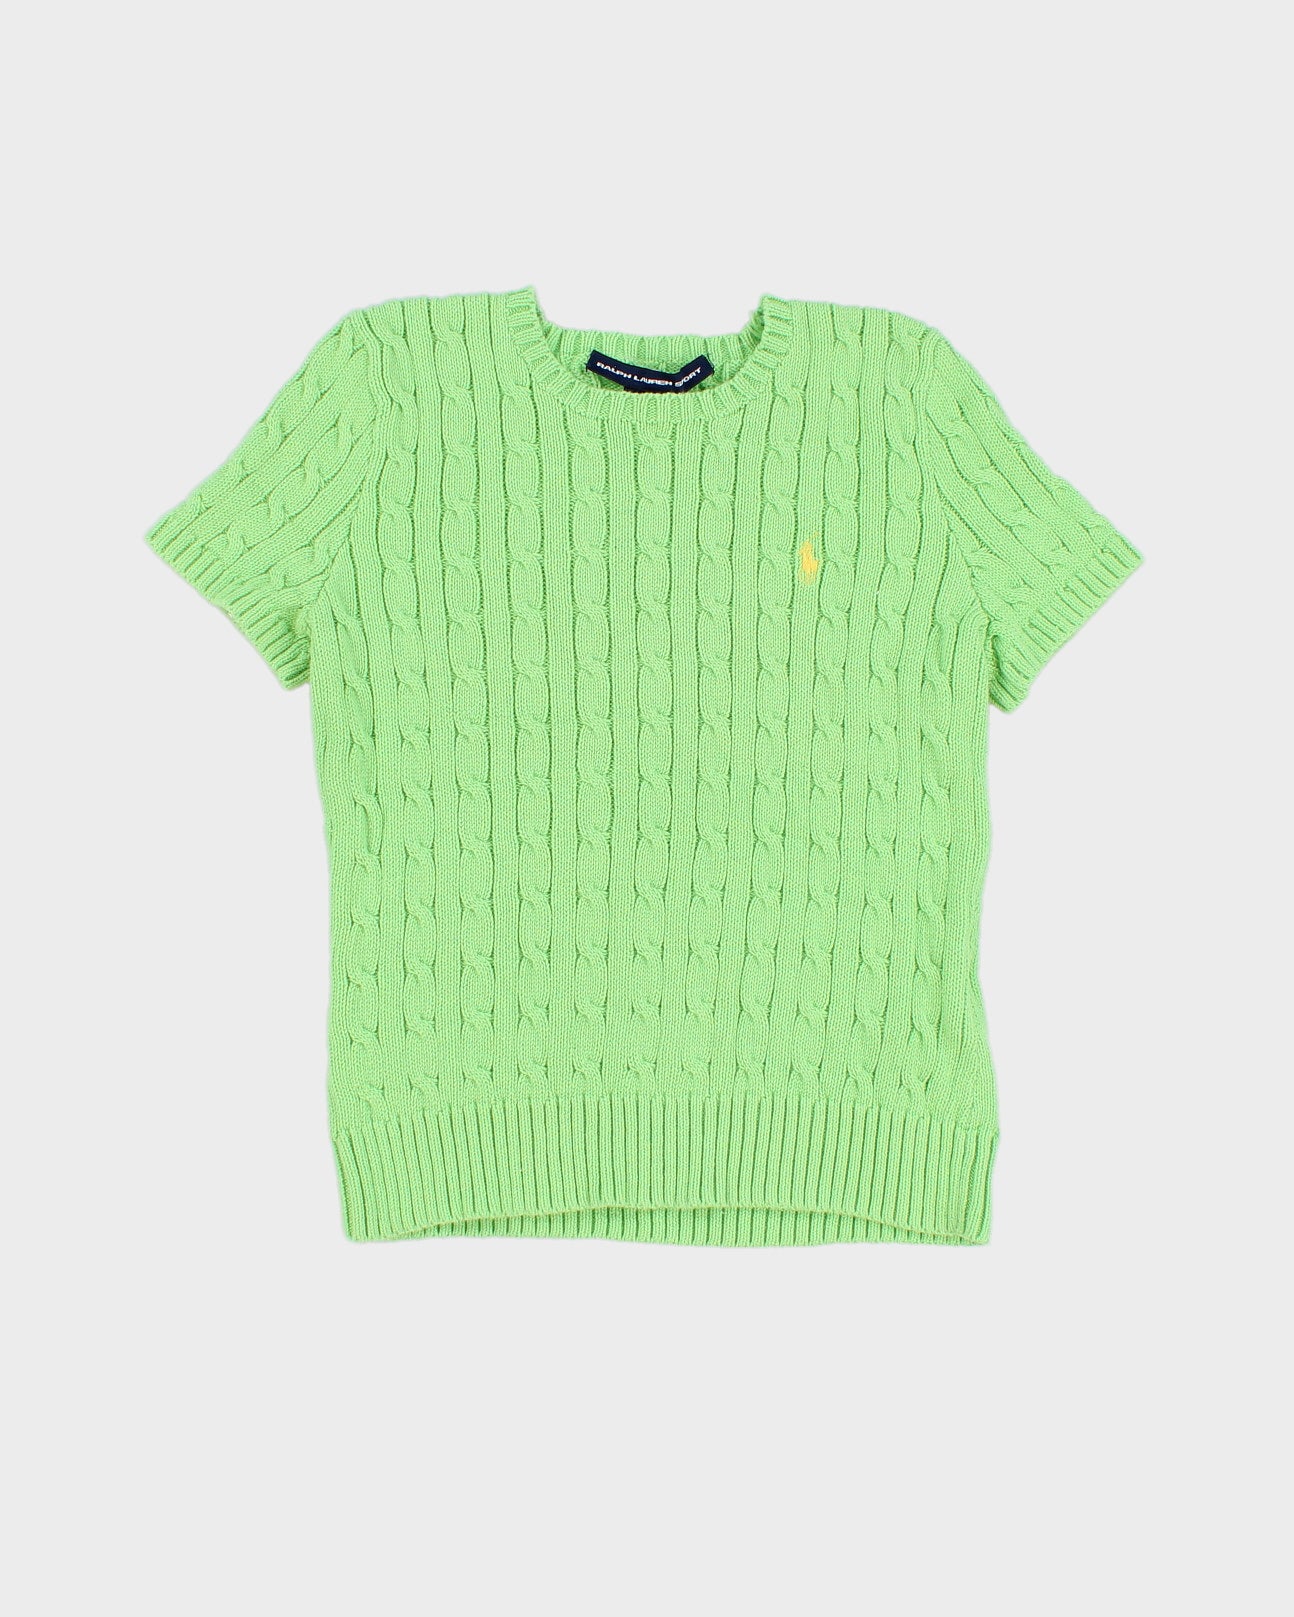 Green Ralph Lauren Short Sleeved Jumper - S